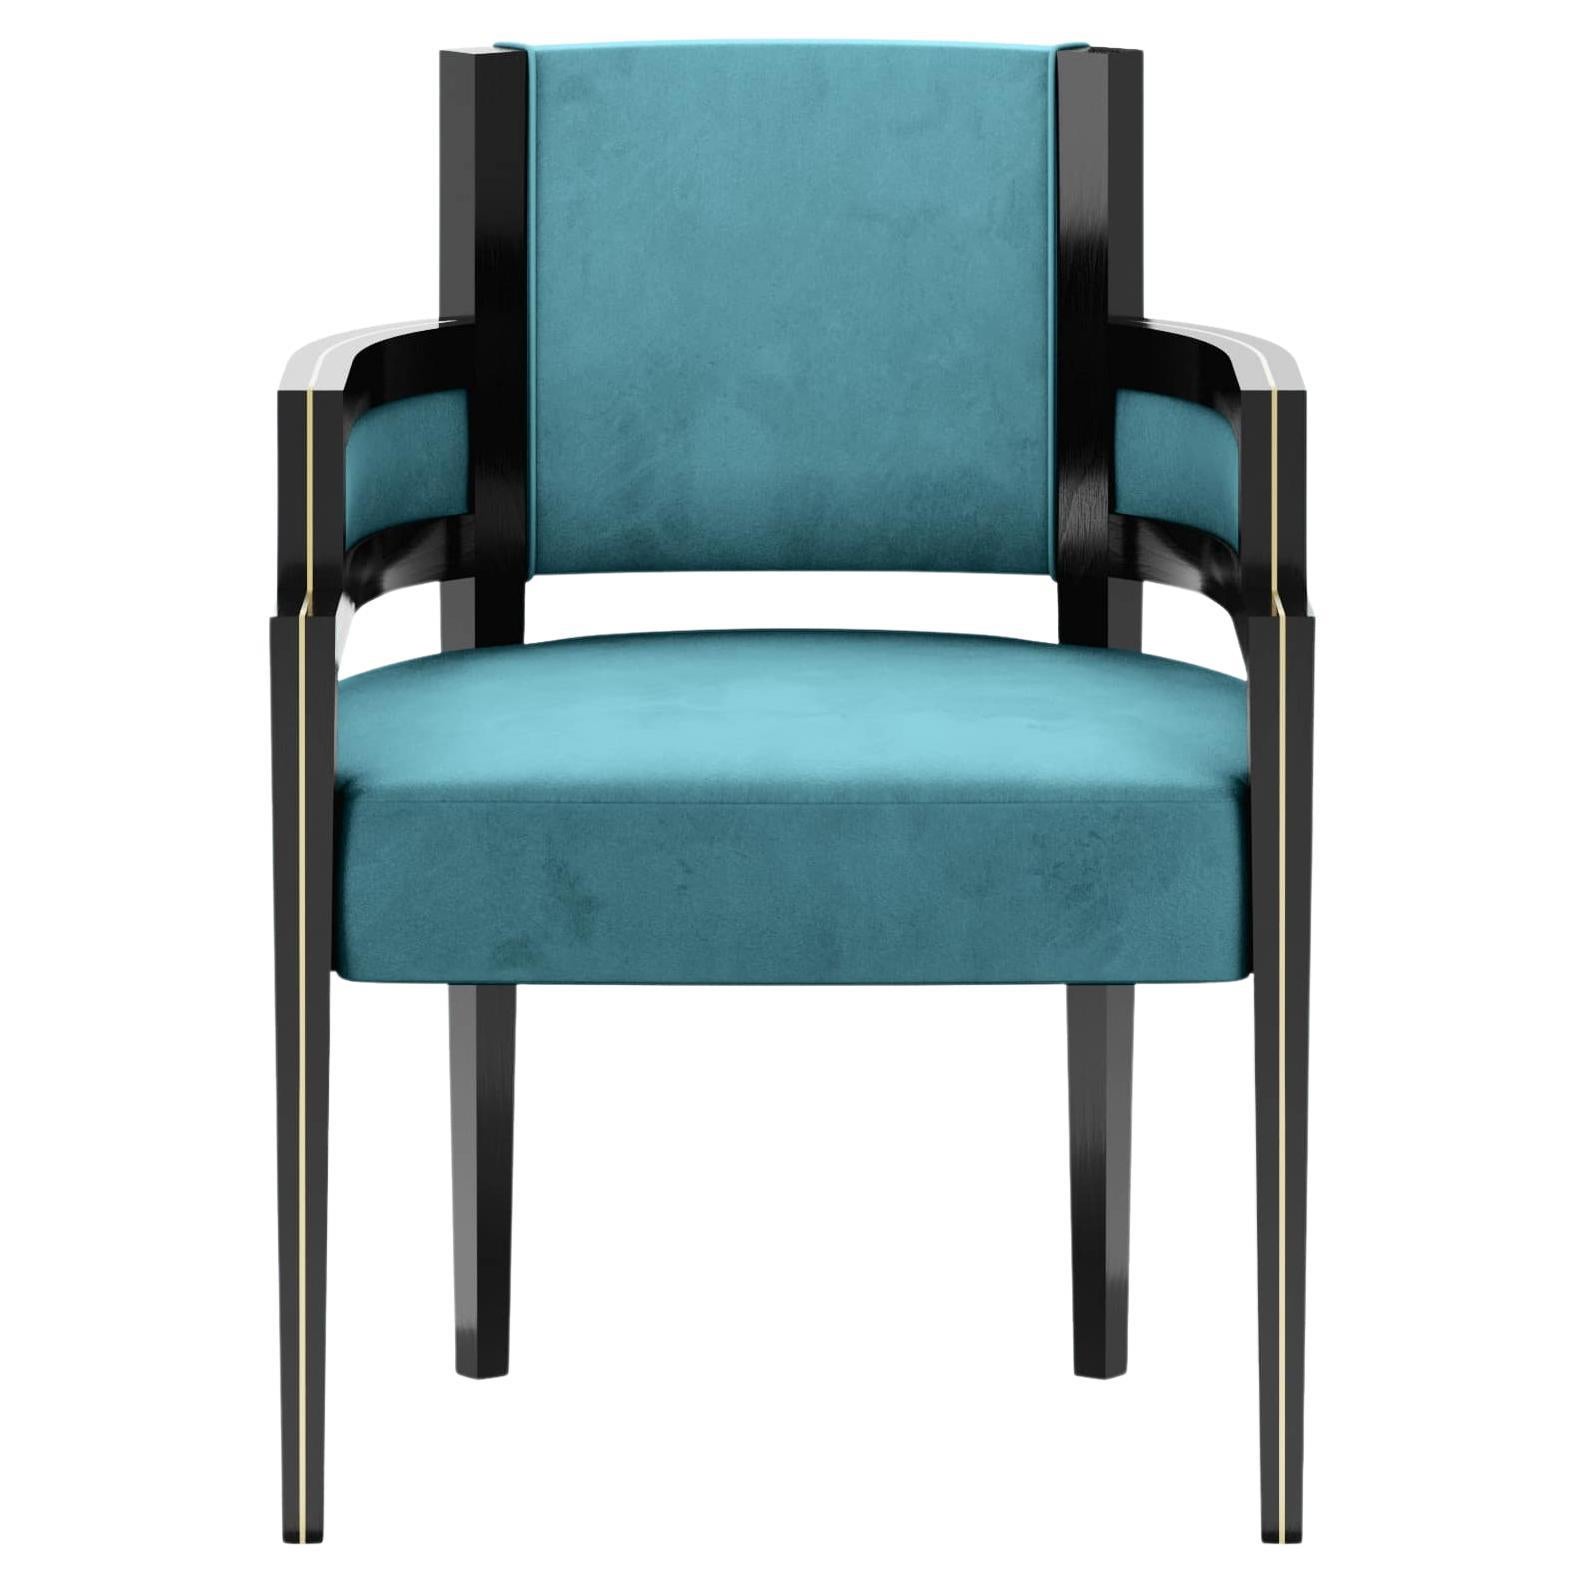 Art Deco Style Light Blue Velvet Upholstery Chair Dining Room Chair For Sale